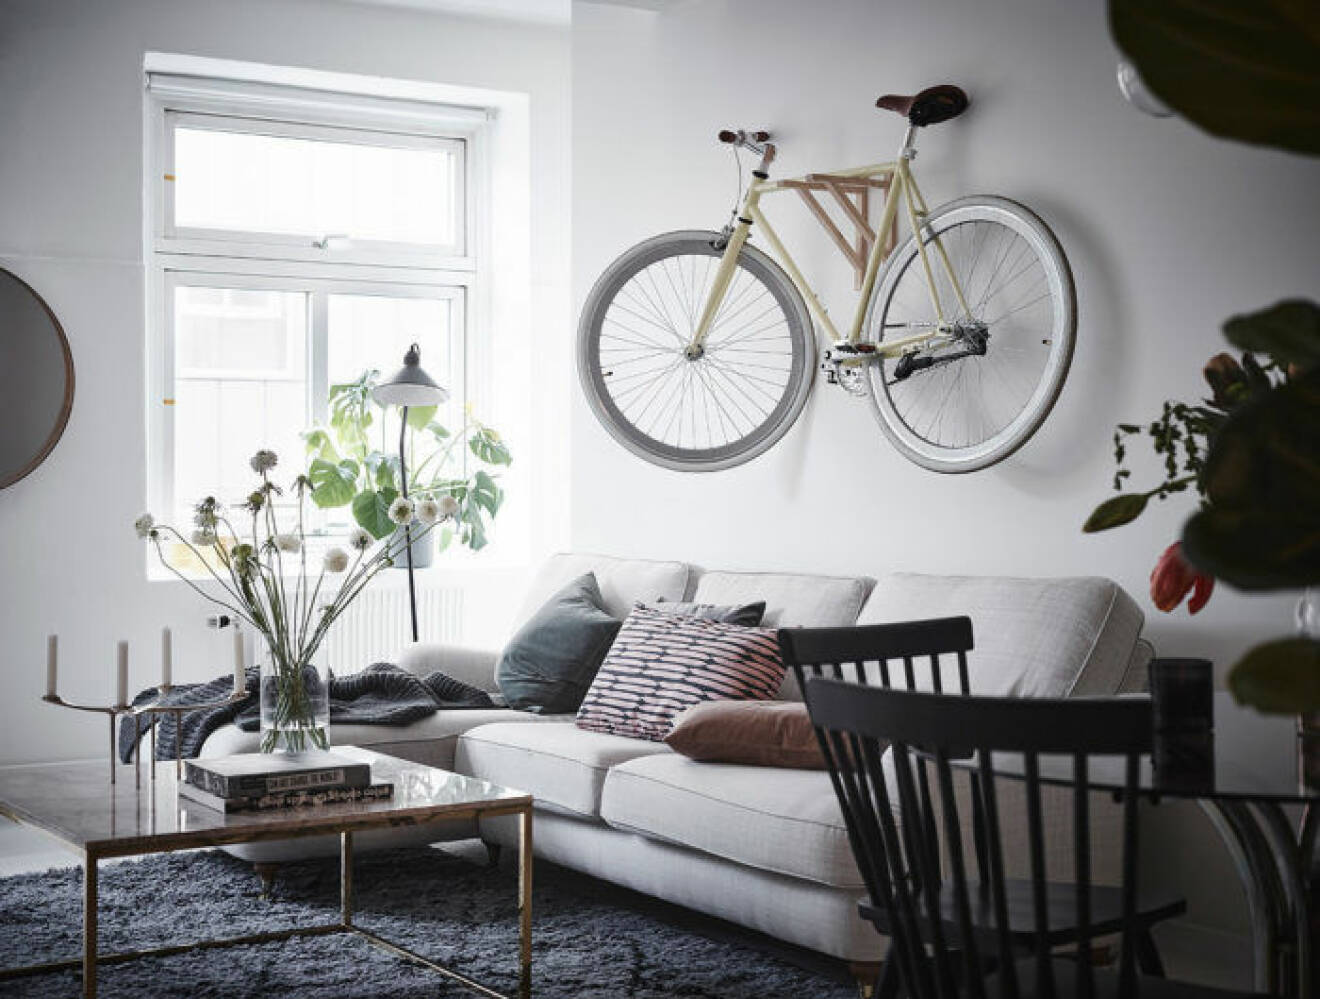 Livingroom in scandinavian style. 